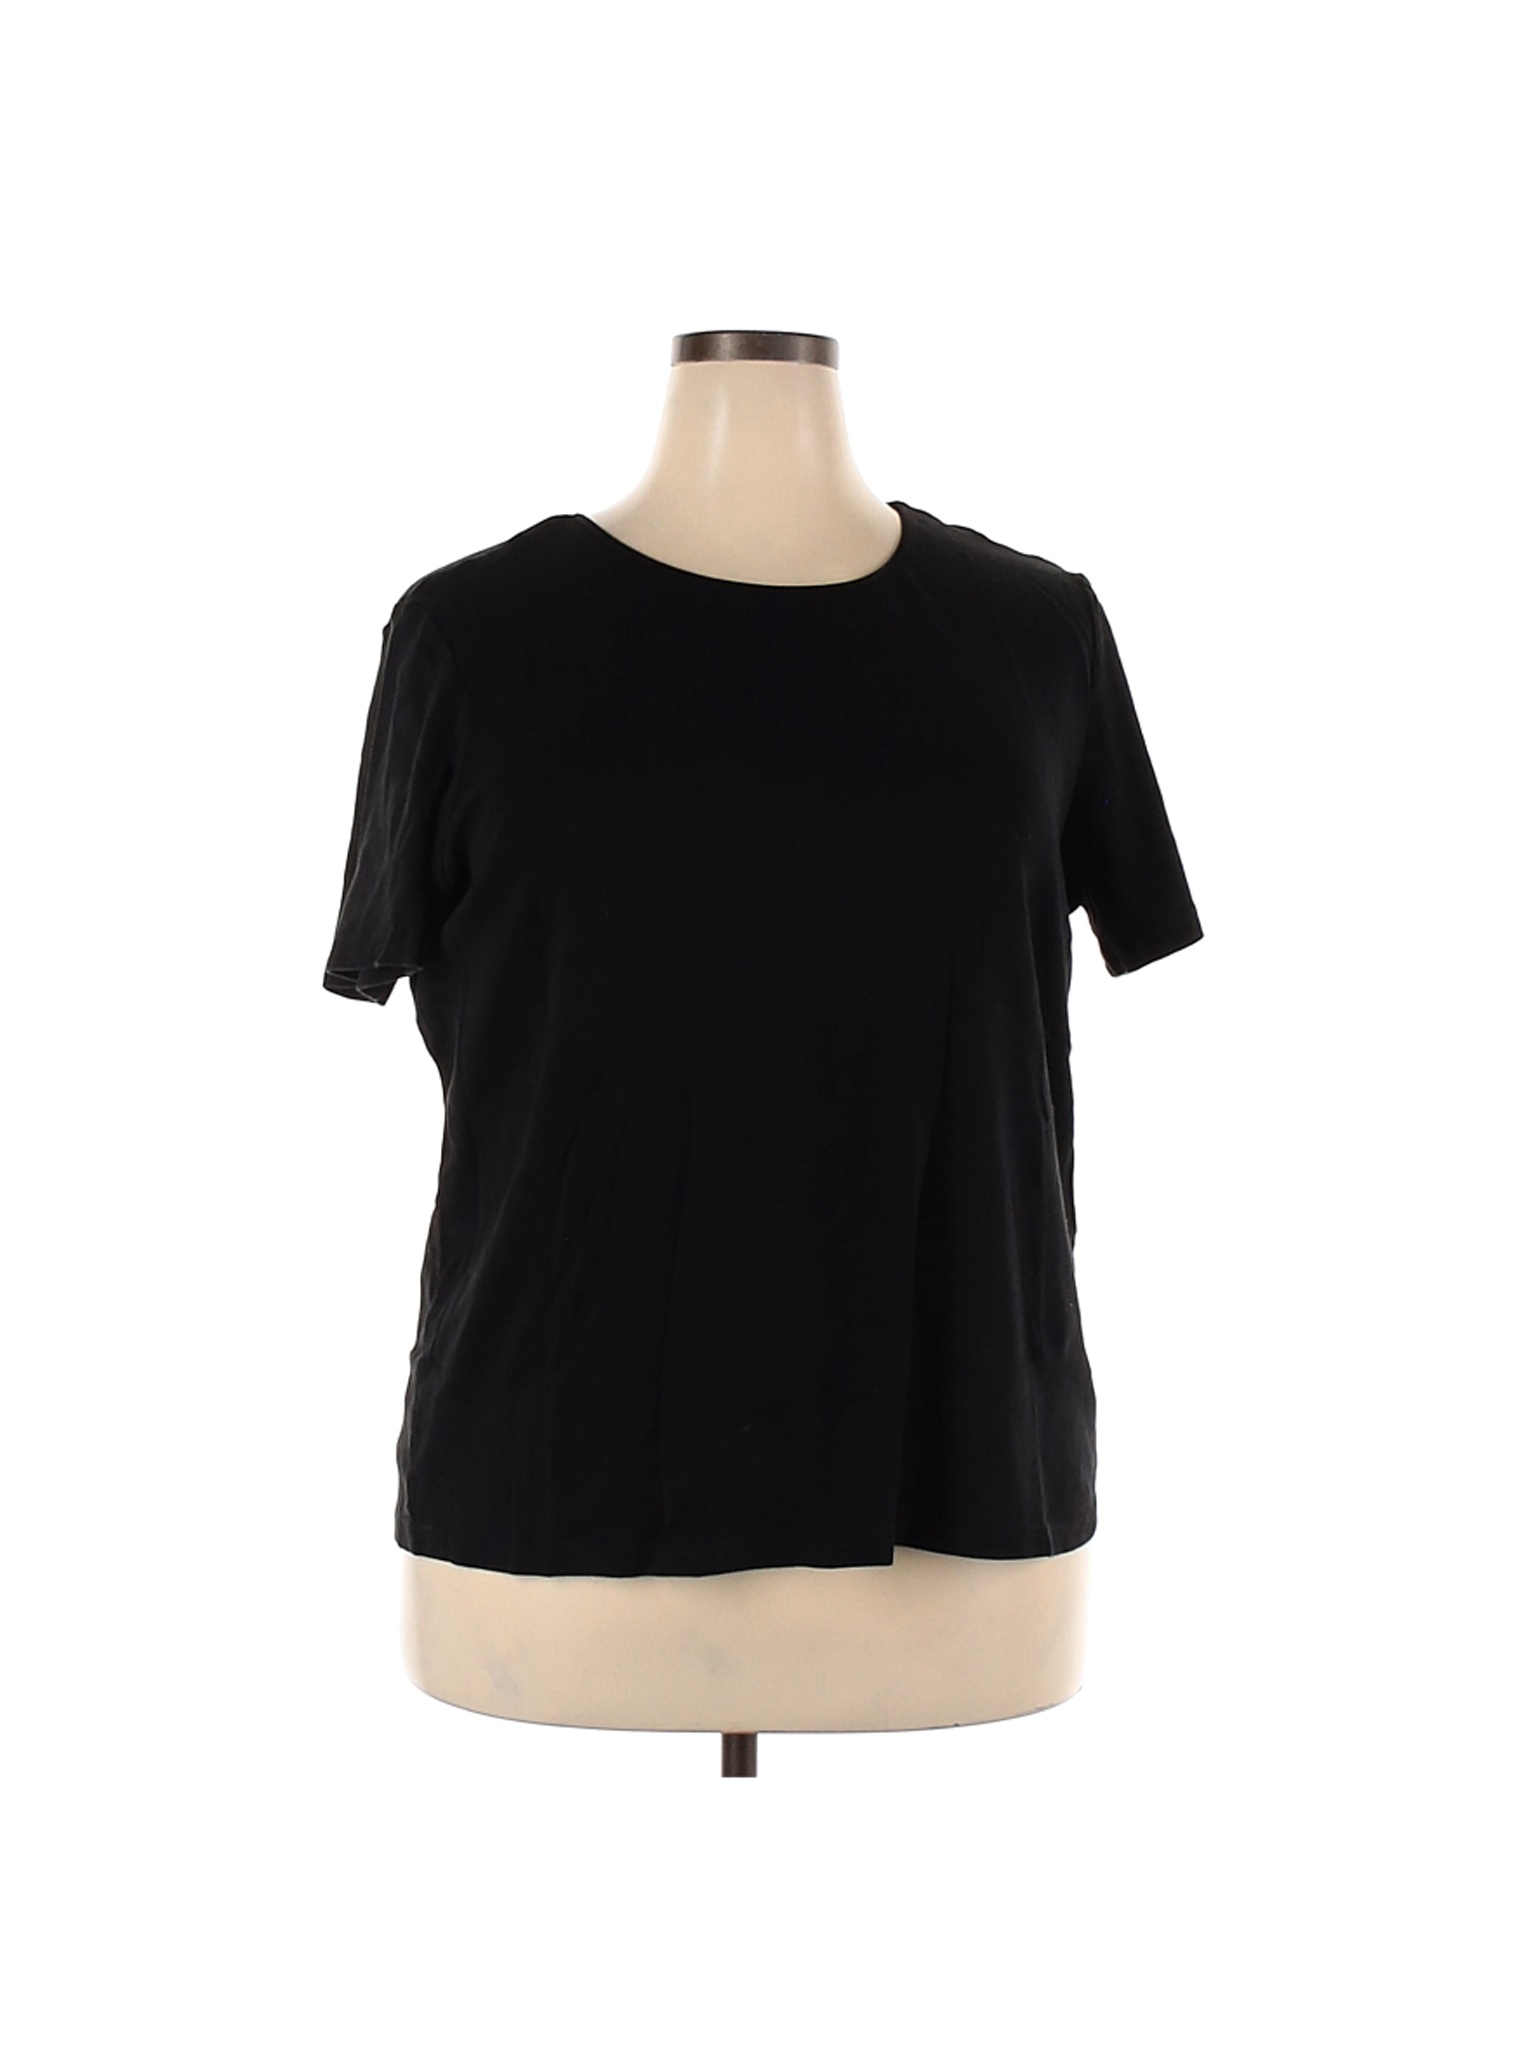 Cj Banks 100% Cotton Solid Black Short Sleeve T-Shirt Size 2X (Plus ...